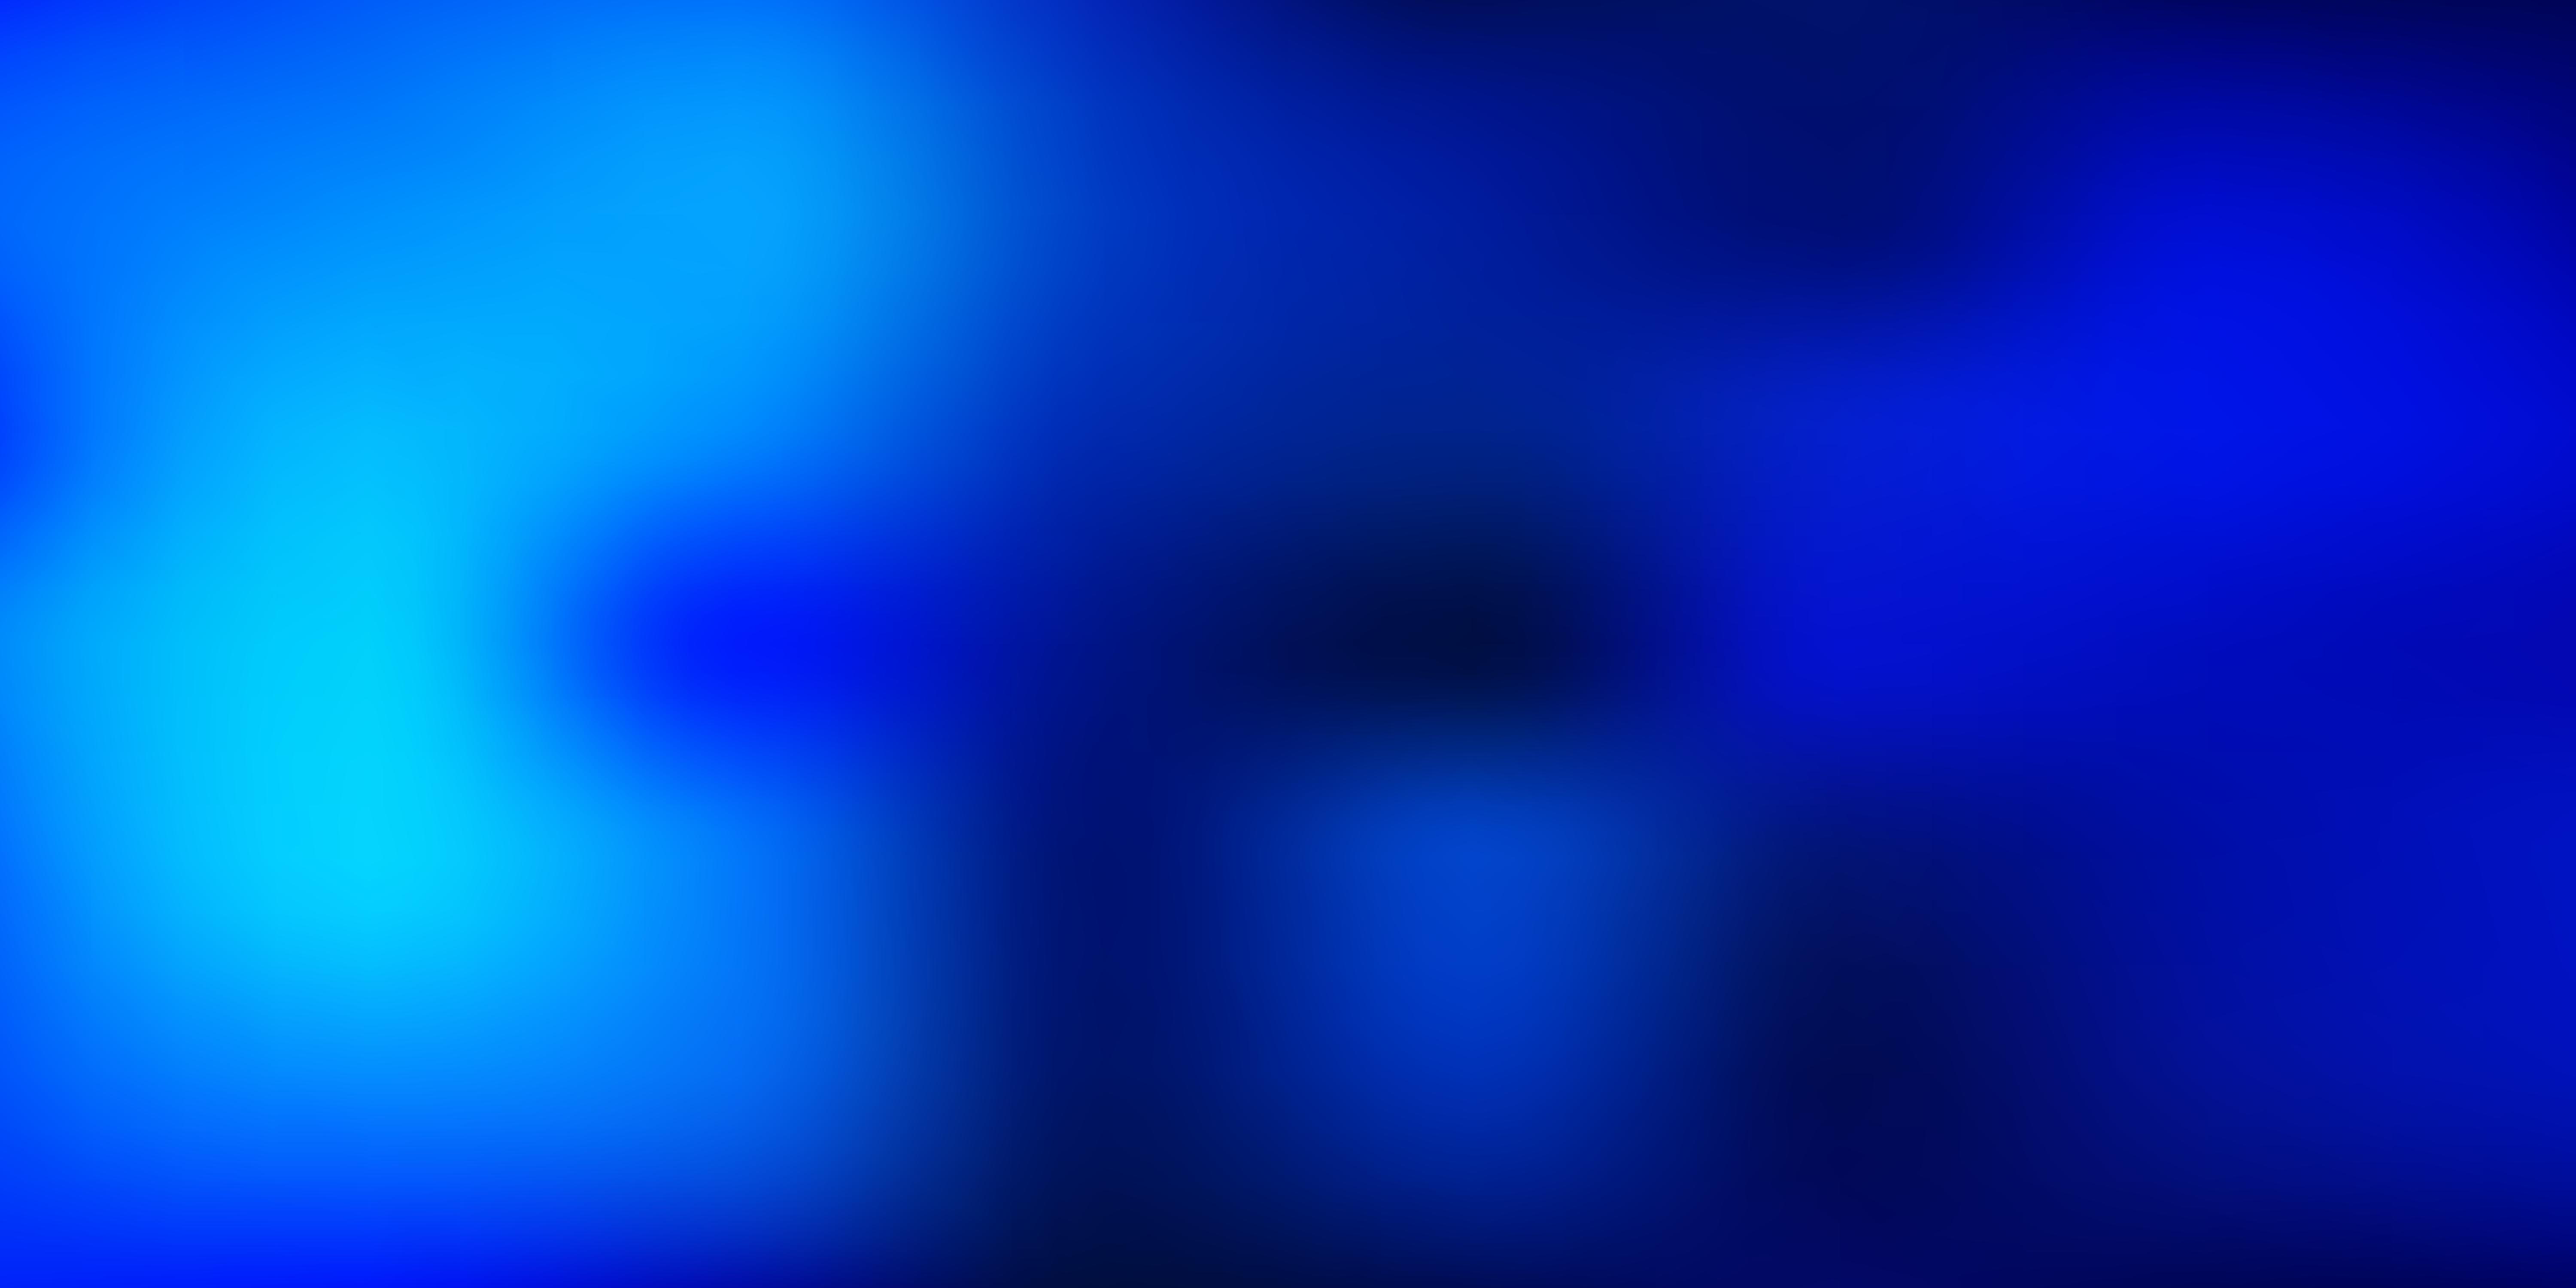 Dark blue vector blur background. 1887339 Vector Art at Vecteezy